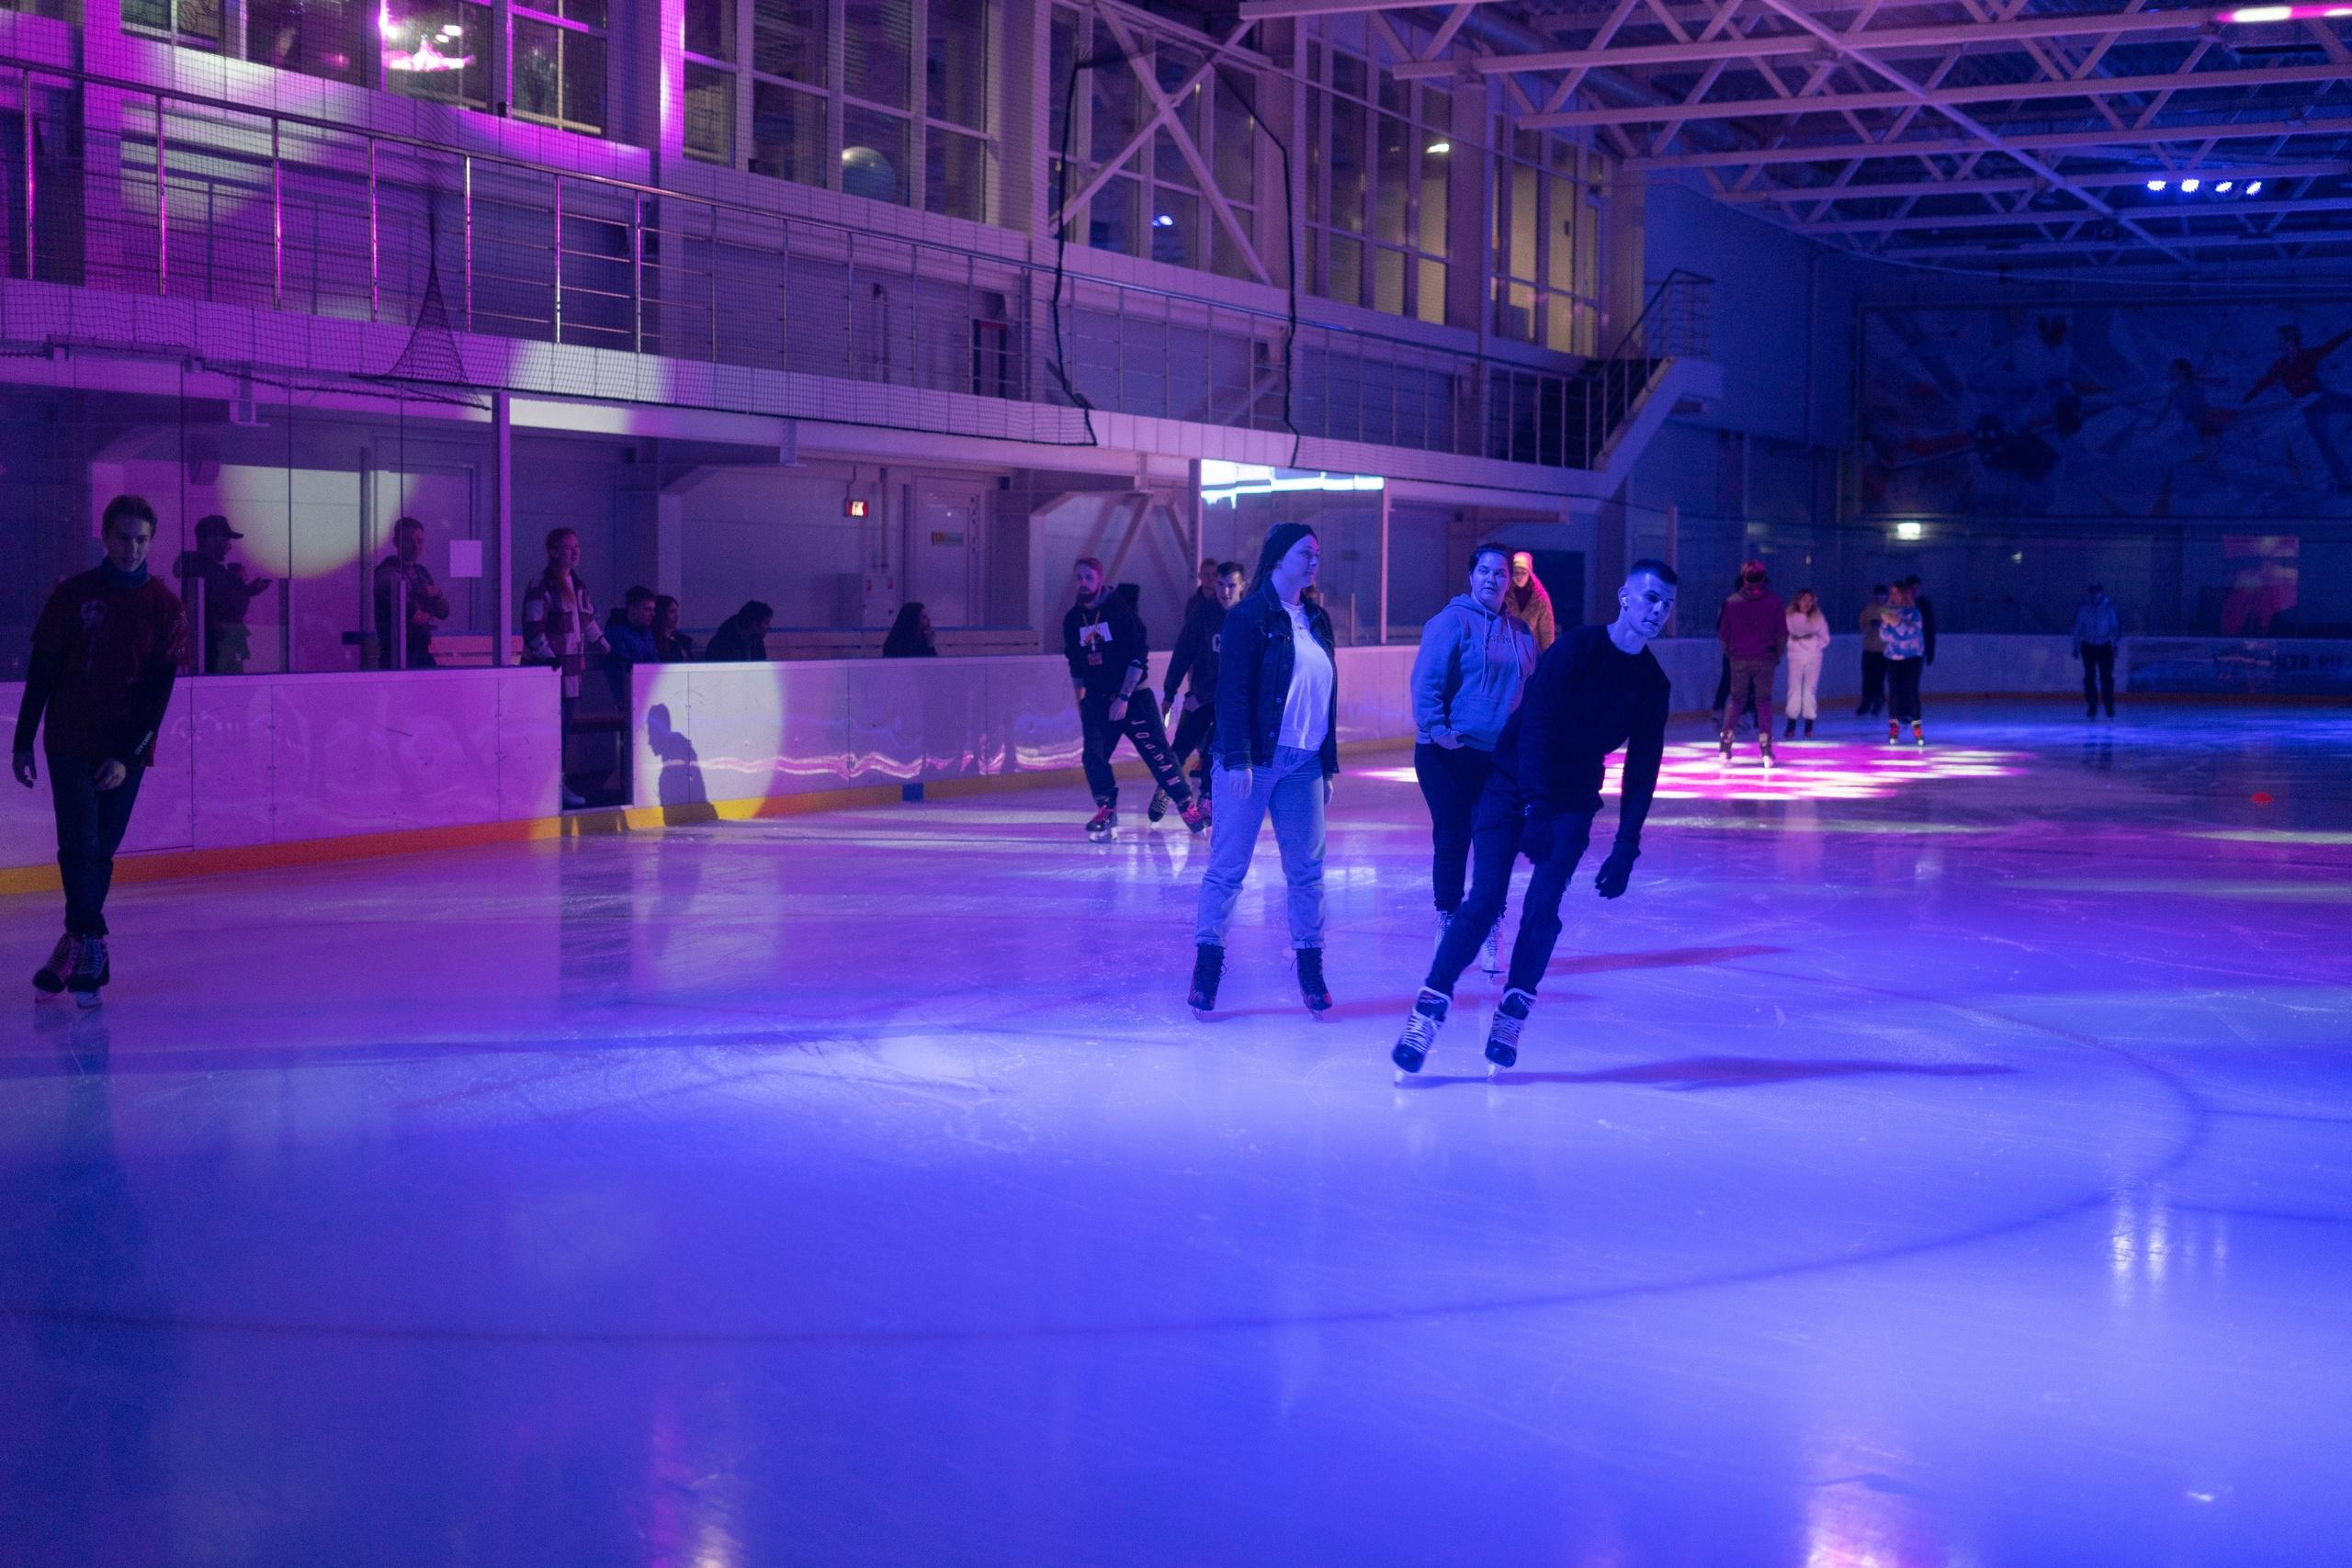 Ночное катание на коньках с прокатом в спортивном комплексе Arena Play со скидкой 50%